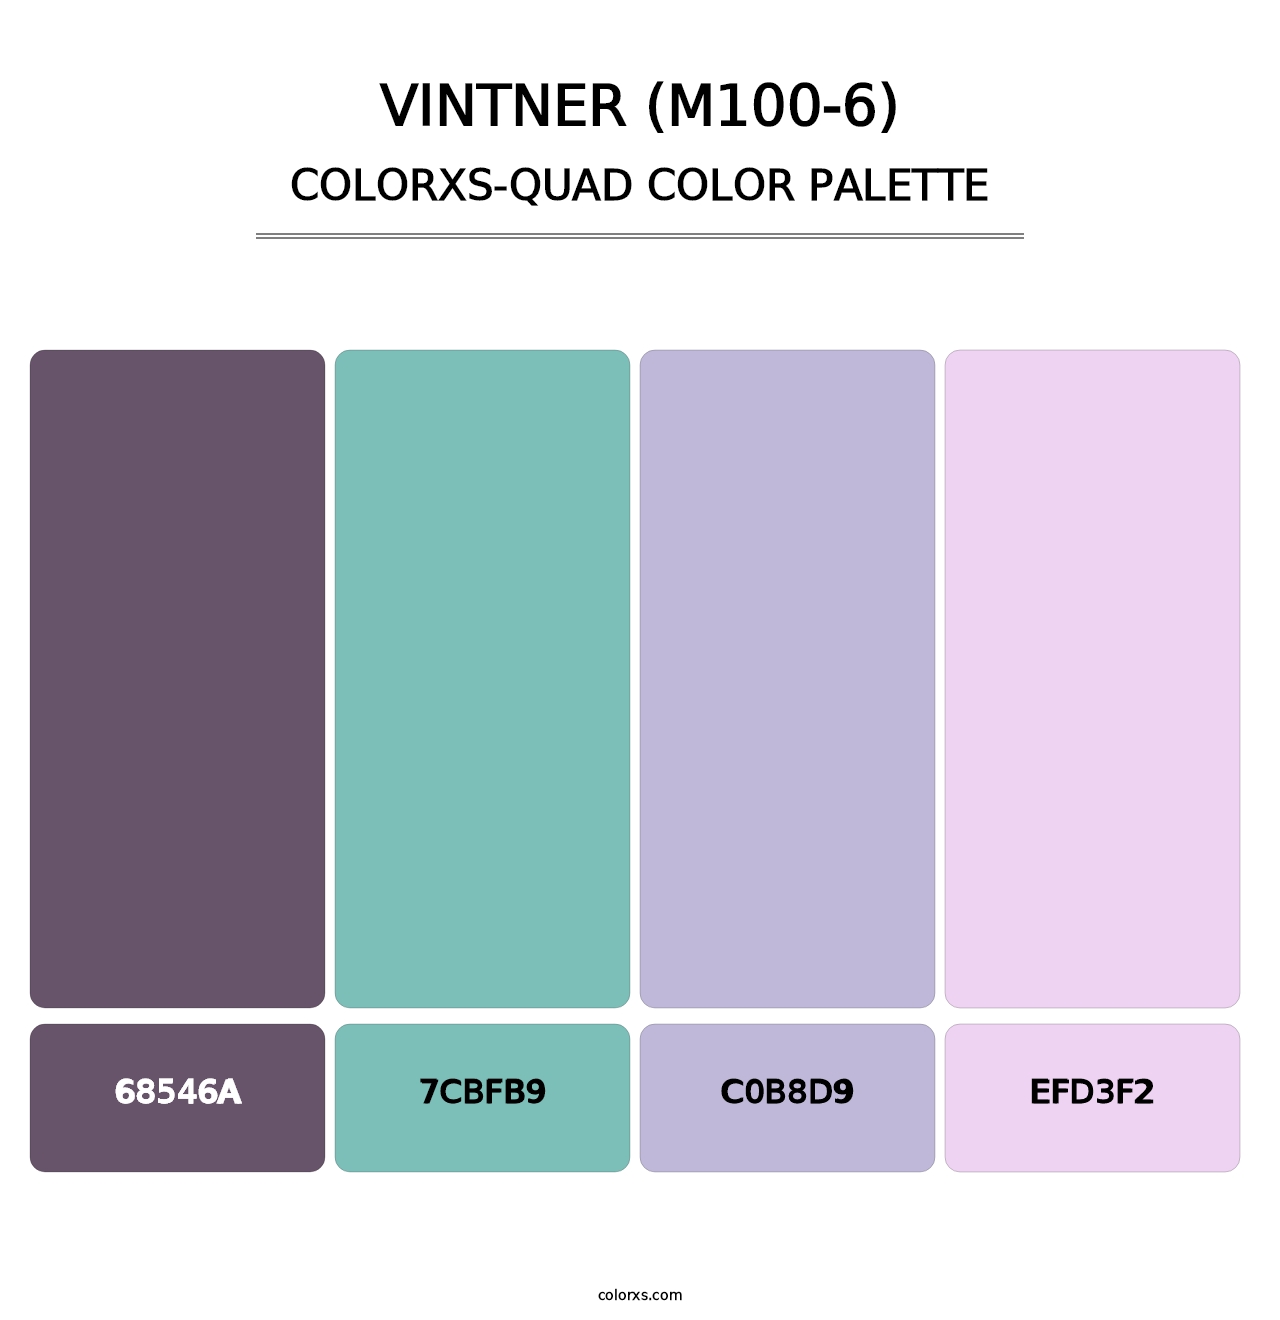 Vintner (M100-6) - Colorxs Quad Palette